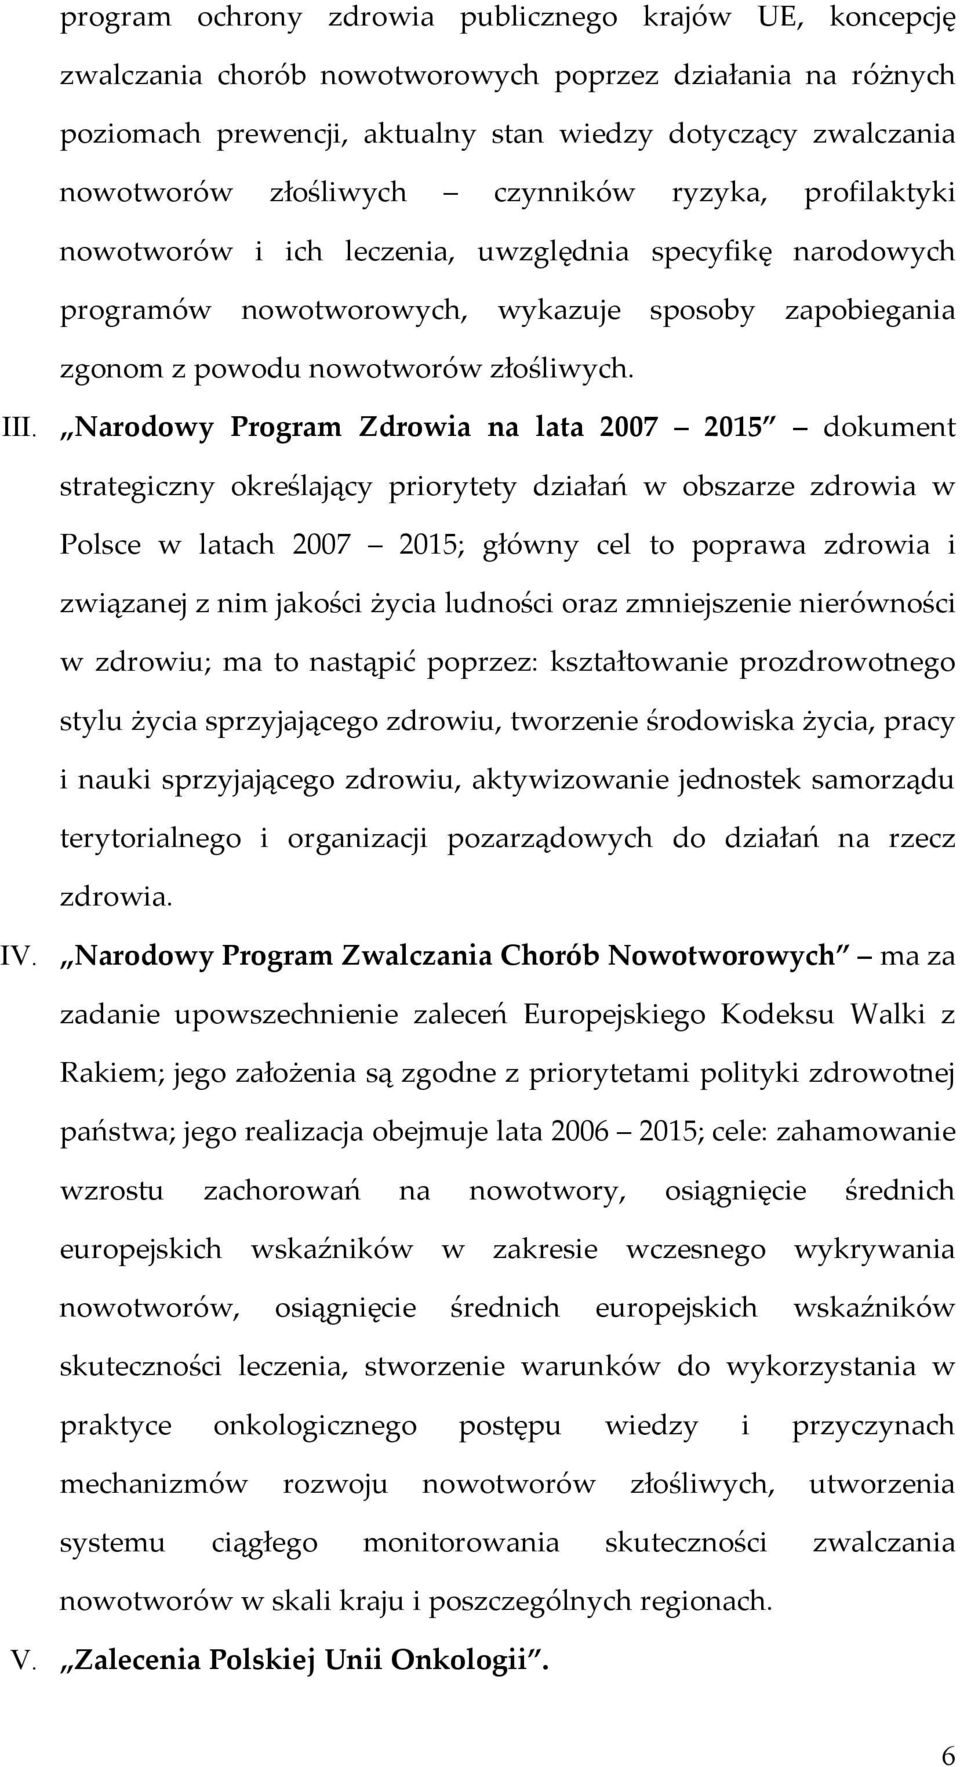 Narodowy Program Zdrowia na lata 2007 2015 dokument strategiczny określający priorytety działań w obszarze zdrowia w Polsce w latach 2007 2015; główny cel to poprawa zdrowia i związanej z nim jakości